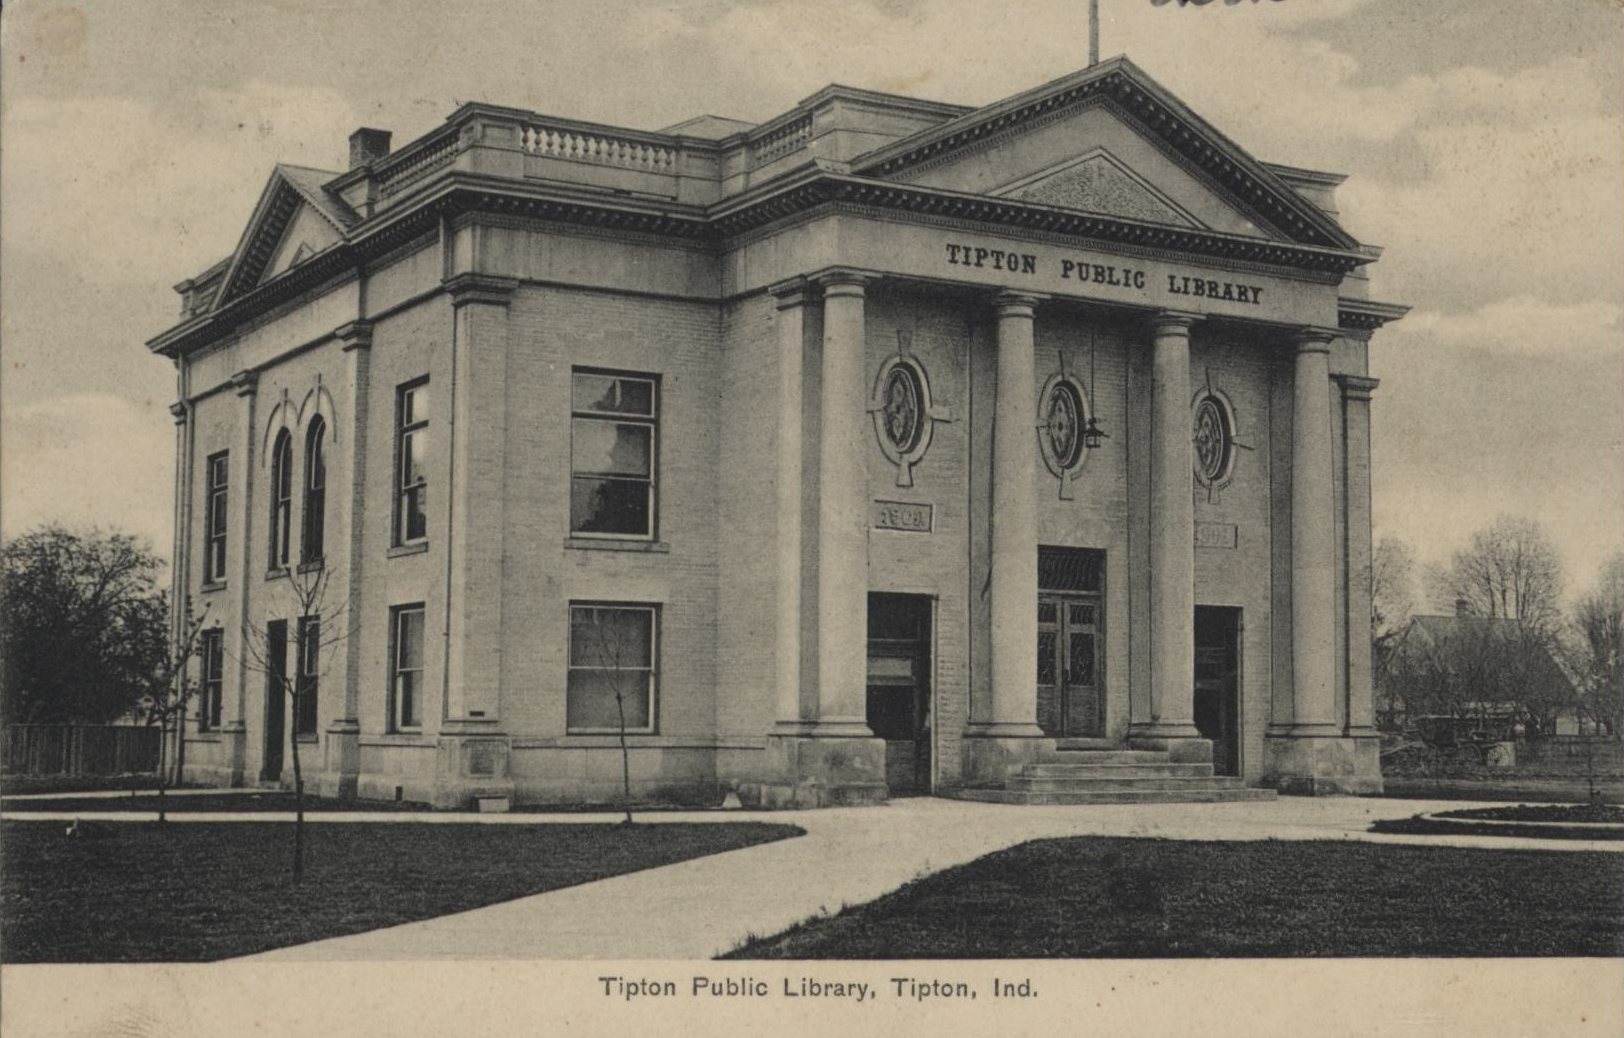 Tipton Public Library